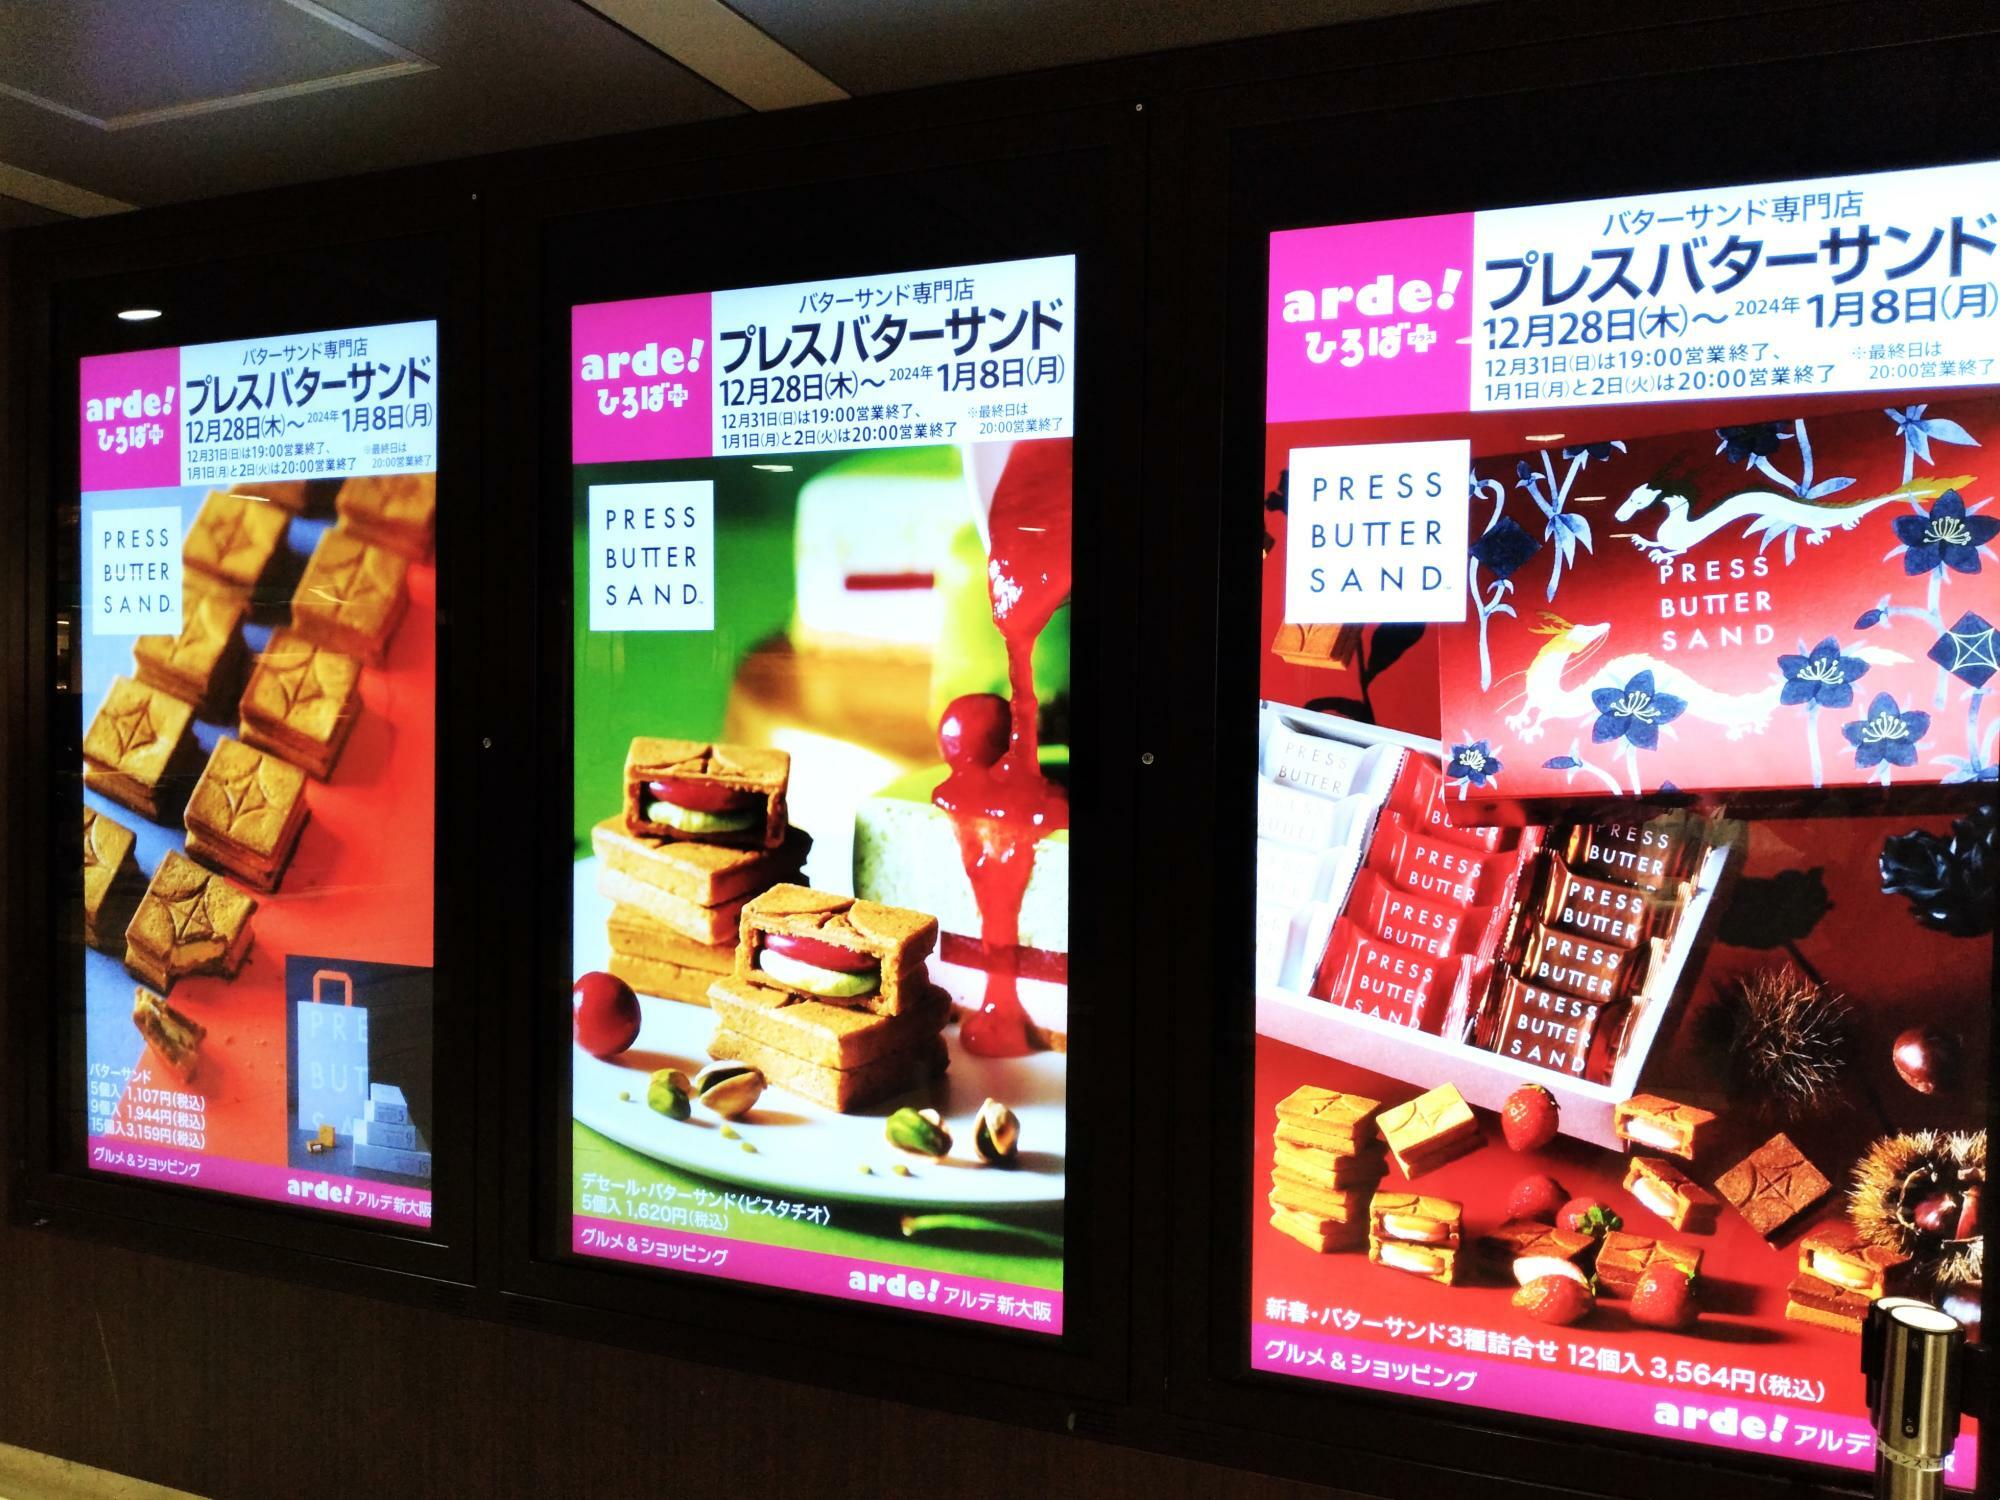 デジタルポスターが、新大阪アルデひろばのあちこちに。